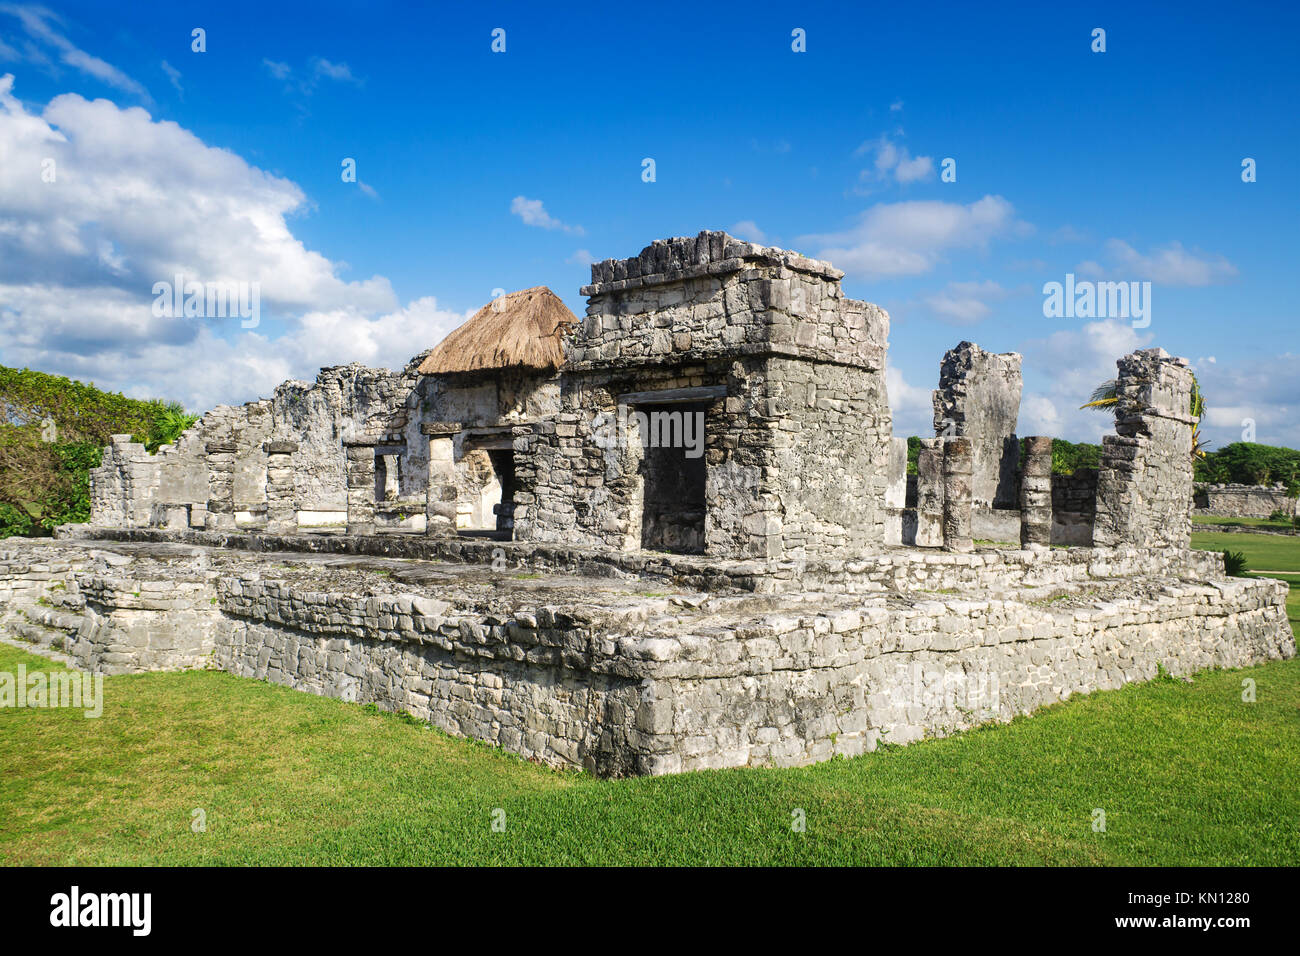 Las ruinas de Tulum - México, Yucatán, sitios mayas Foto de stock